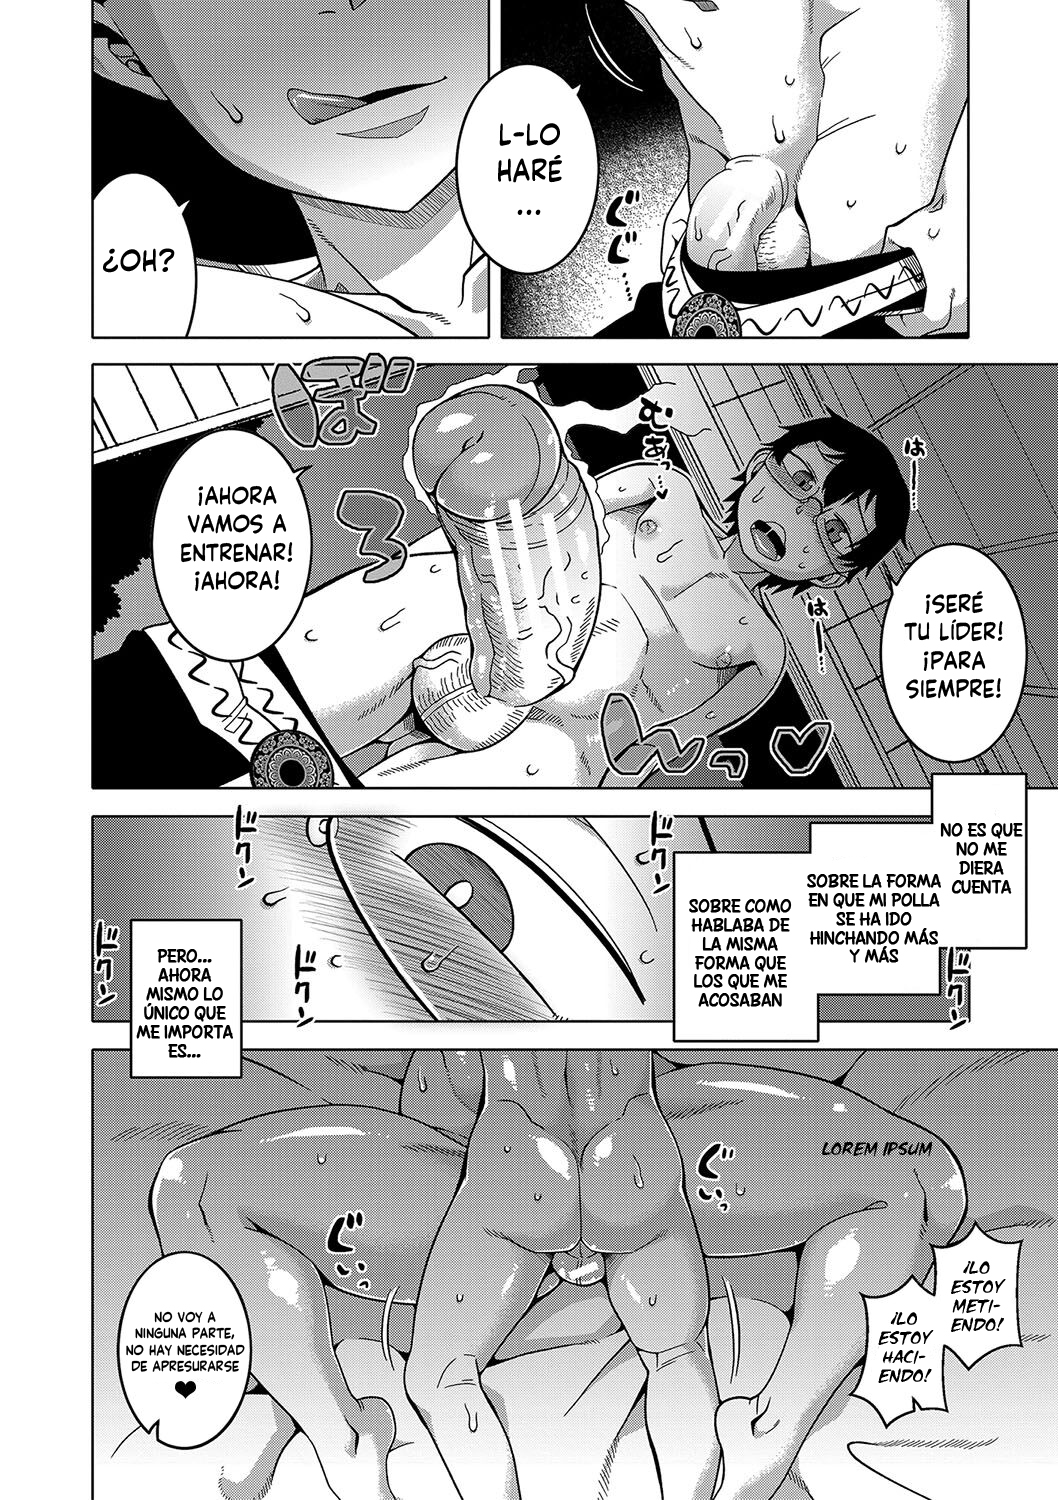 Manga KAMI-SAMA NO TSUKURIKATA-THE MAKING OF A CULT LEADER Chapter 1 image number 9